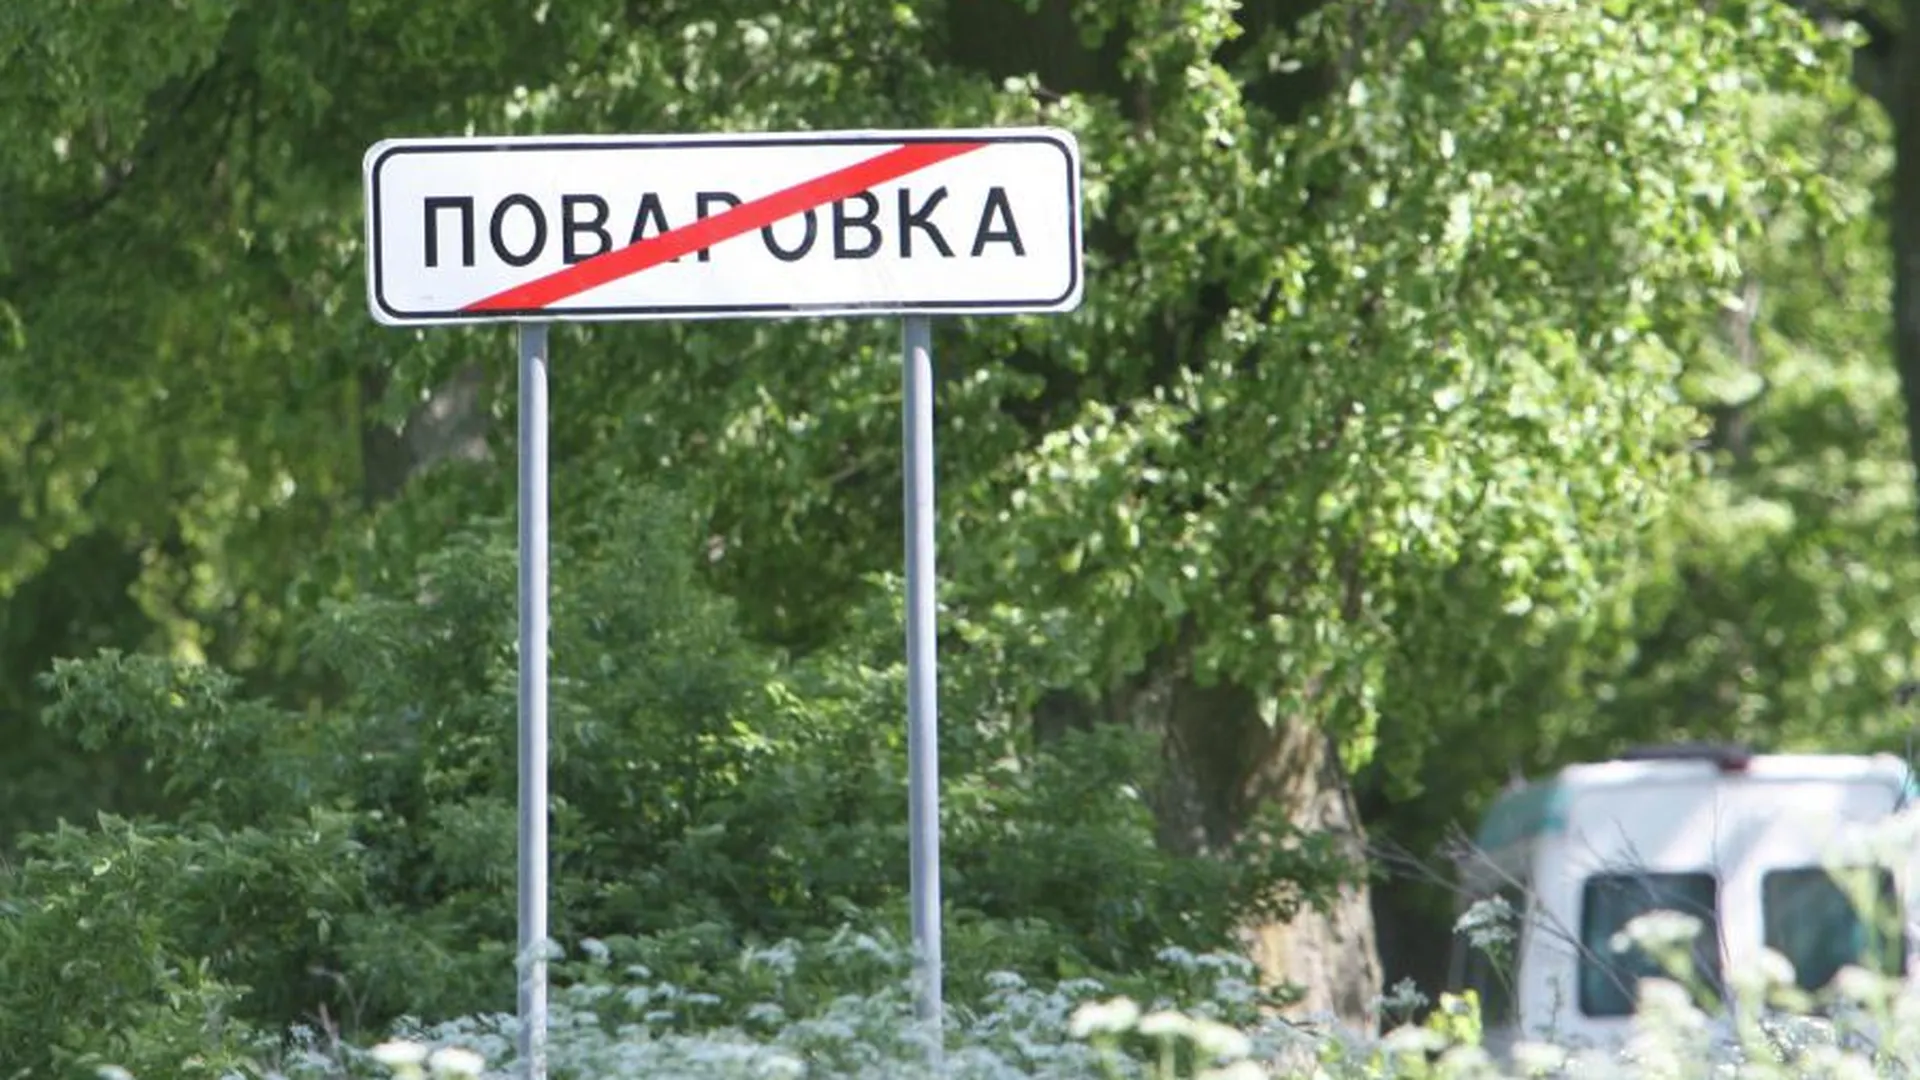 Депутаты Госдумы предложили запретить оскорбительные названия населенных пунктов